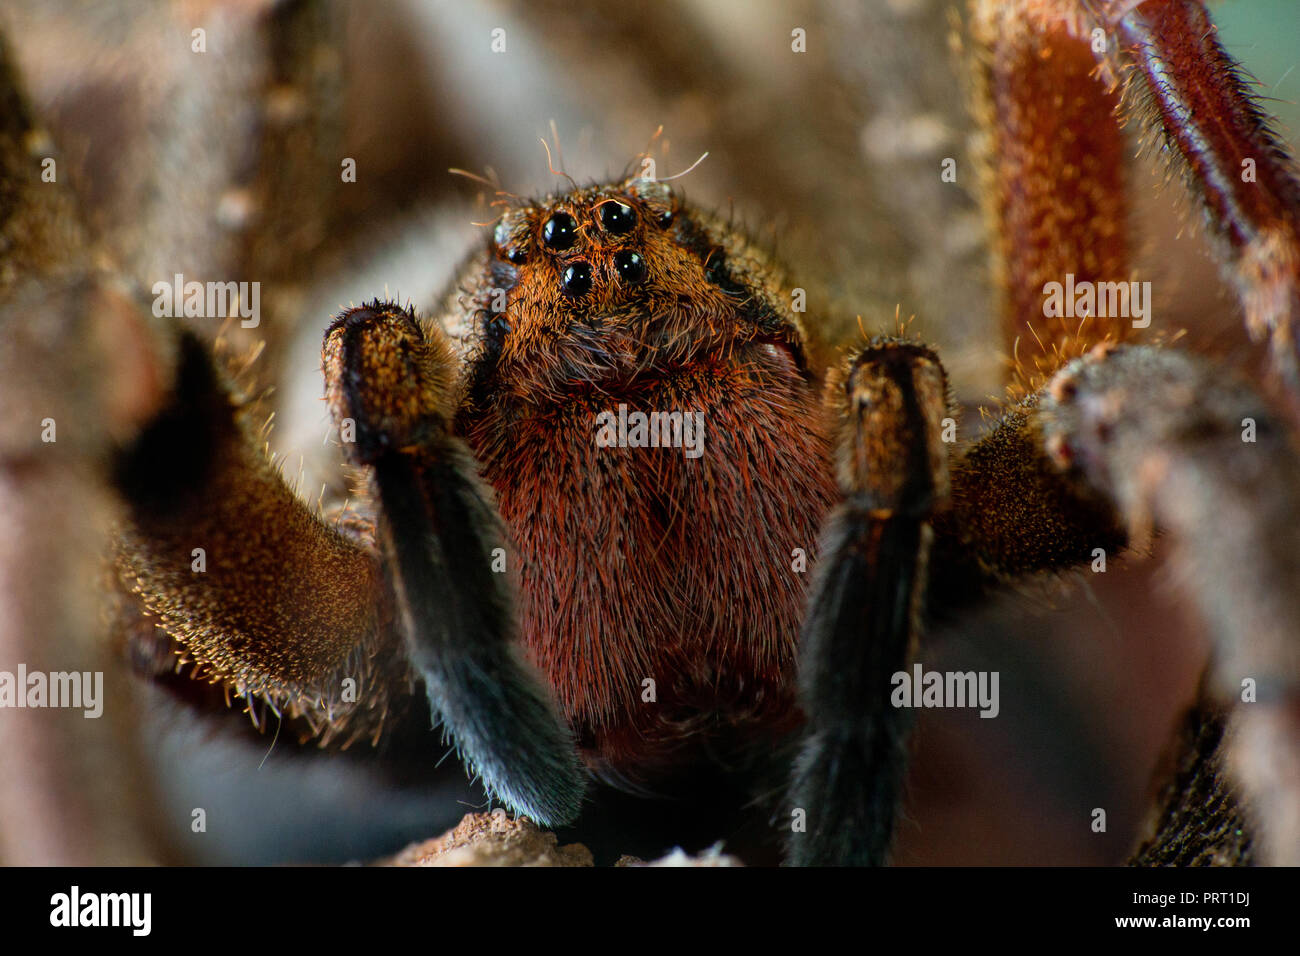 L'errance du Brésil (araignée Phoneutria aranha, armadeira) face frontale montrant l'araignée yeux macro, portrait détaillé. Araignée venimeuse du Brésil. Banque D'Images